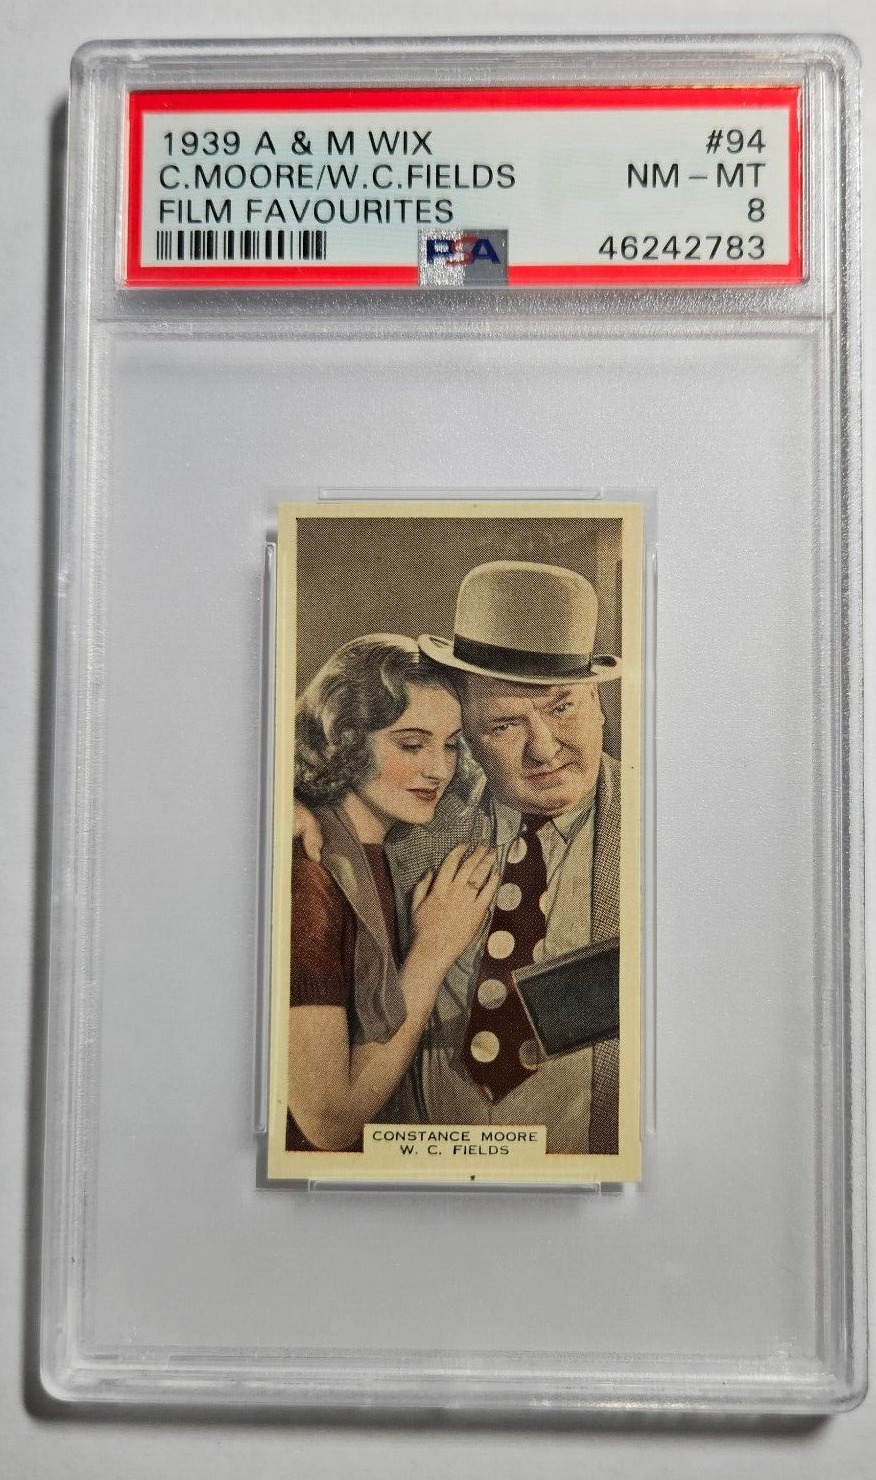 1939 A & M Wix Film Favourites #94 CONSTANCE MOORE & W. C. FIELDS  PSA 8 NM-MT